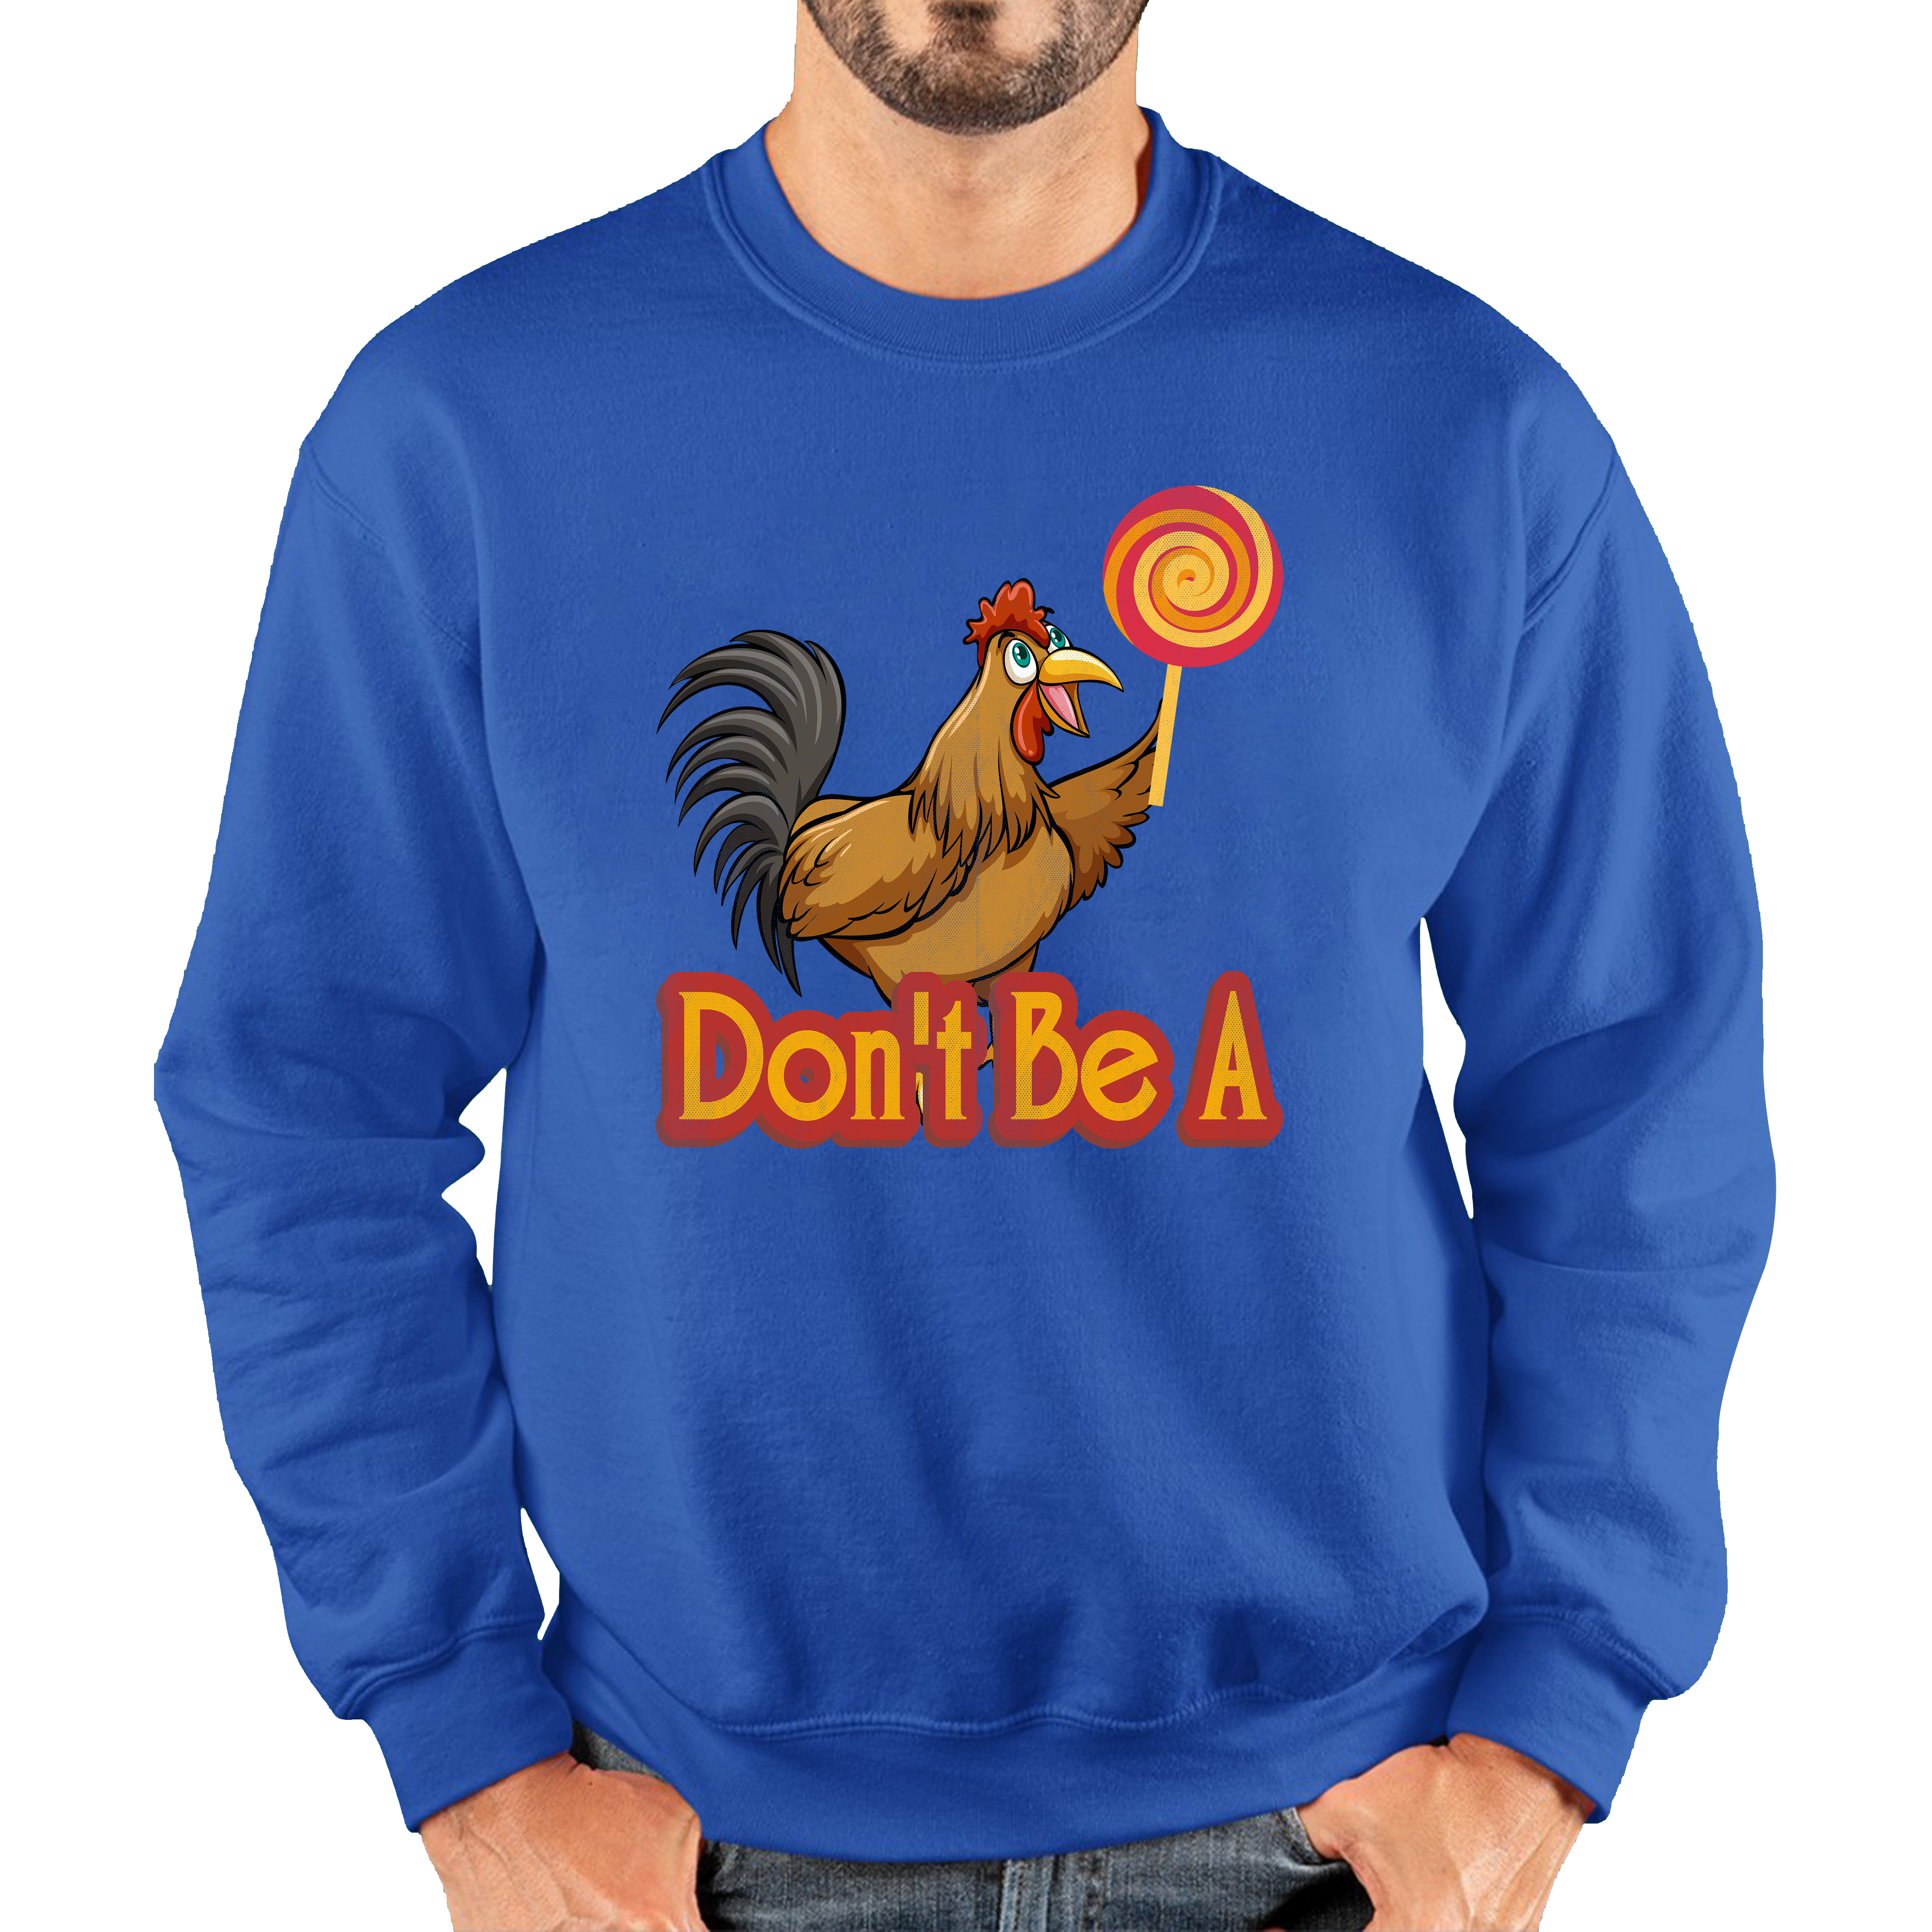 Don't Be A Cock Sucker Rooster Lollipop Candy Jumper Funny Joke Meme Unisex Sweatshirt